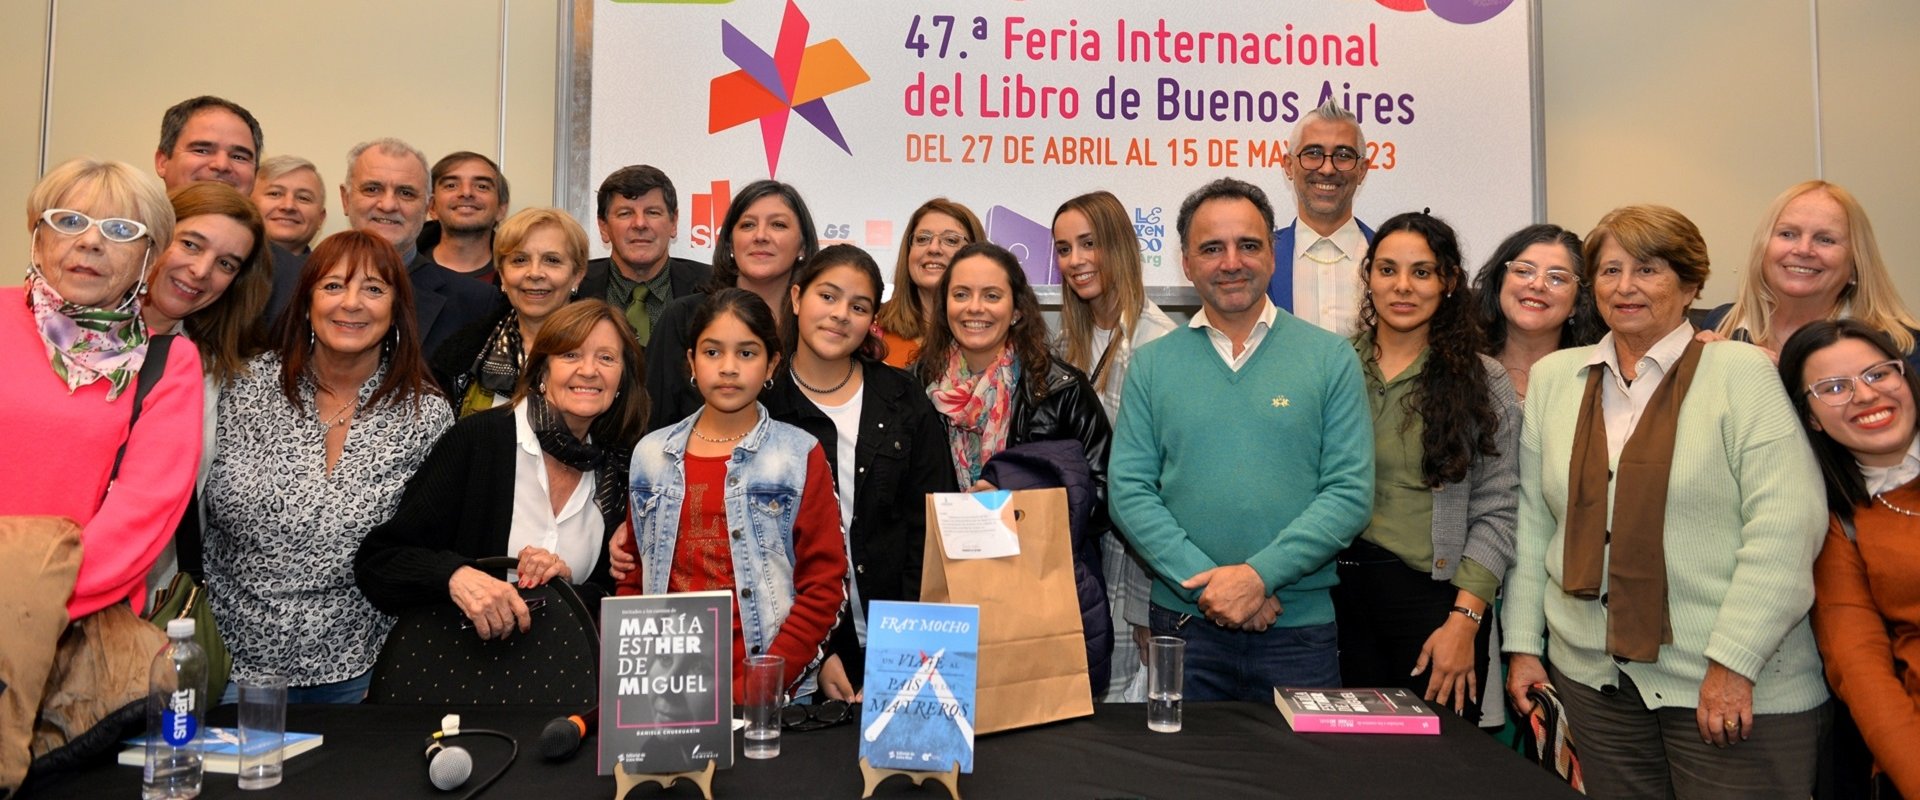 Entre Ríos tuvo su día en Feria Internacional del Libro